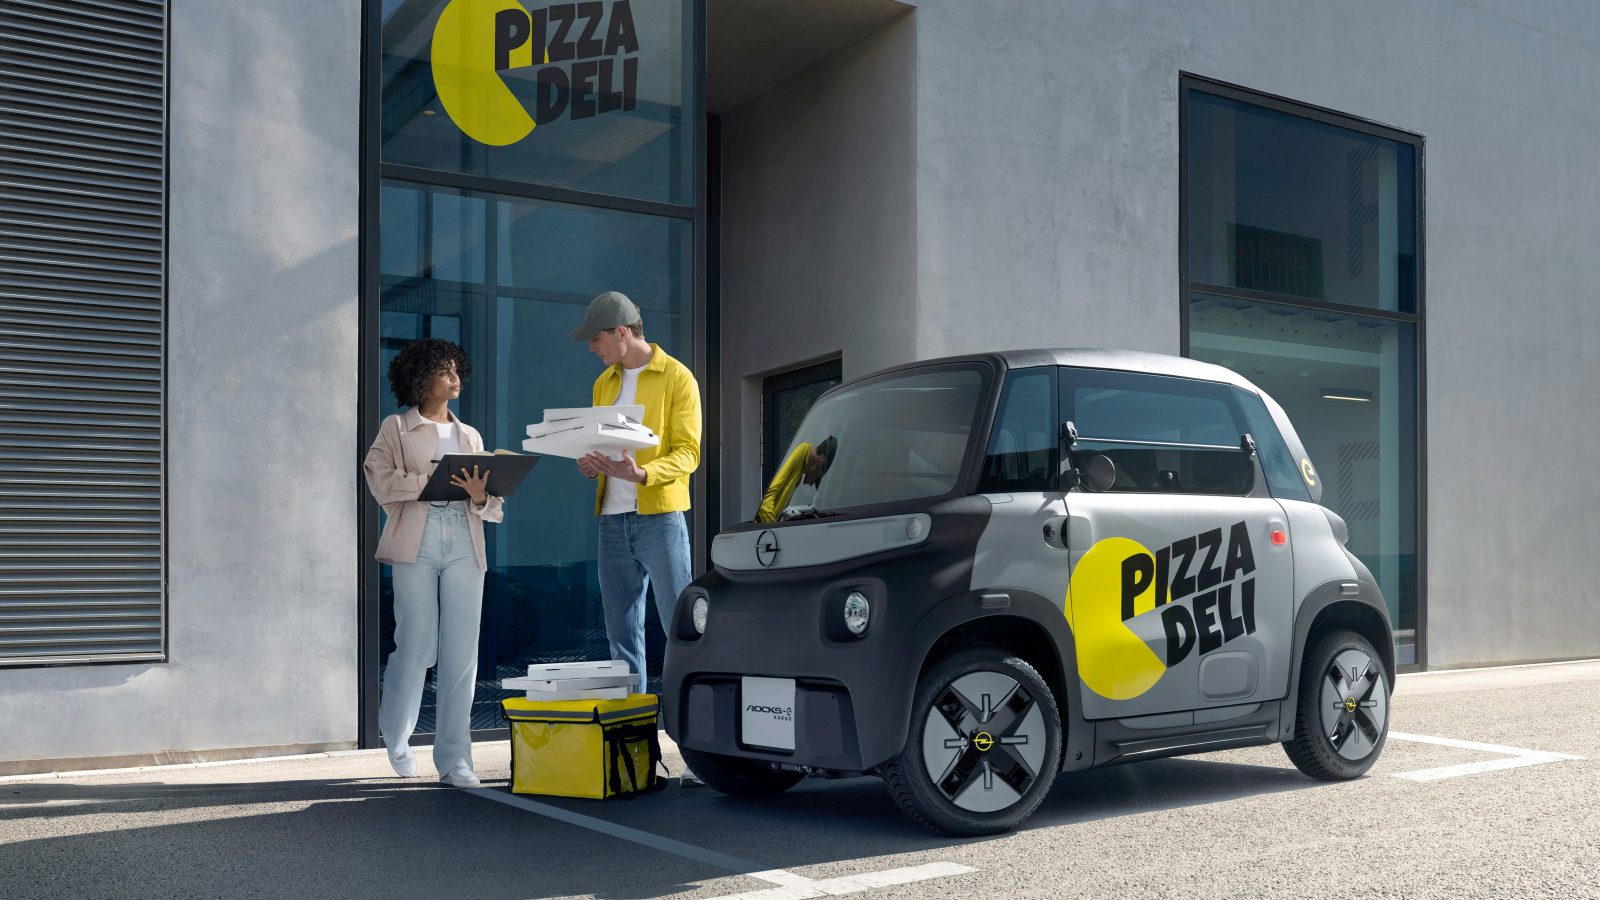 Twee personen staan buiten een gebouw met de bewegwijzering "Pizza Deli". De een houdt pizzadozen vast, terwijl de ander op een klembord kijkt. Een compacte Opel Rocks-e KARGO, met het opschrift ‘Pizza Deli’, staat vlakbij geparkeerd.